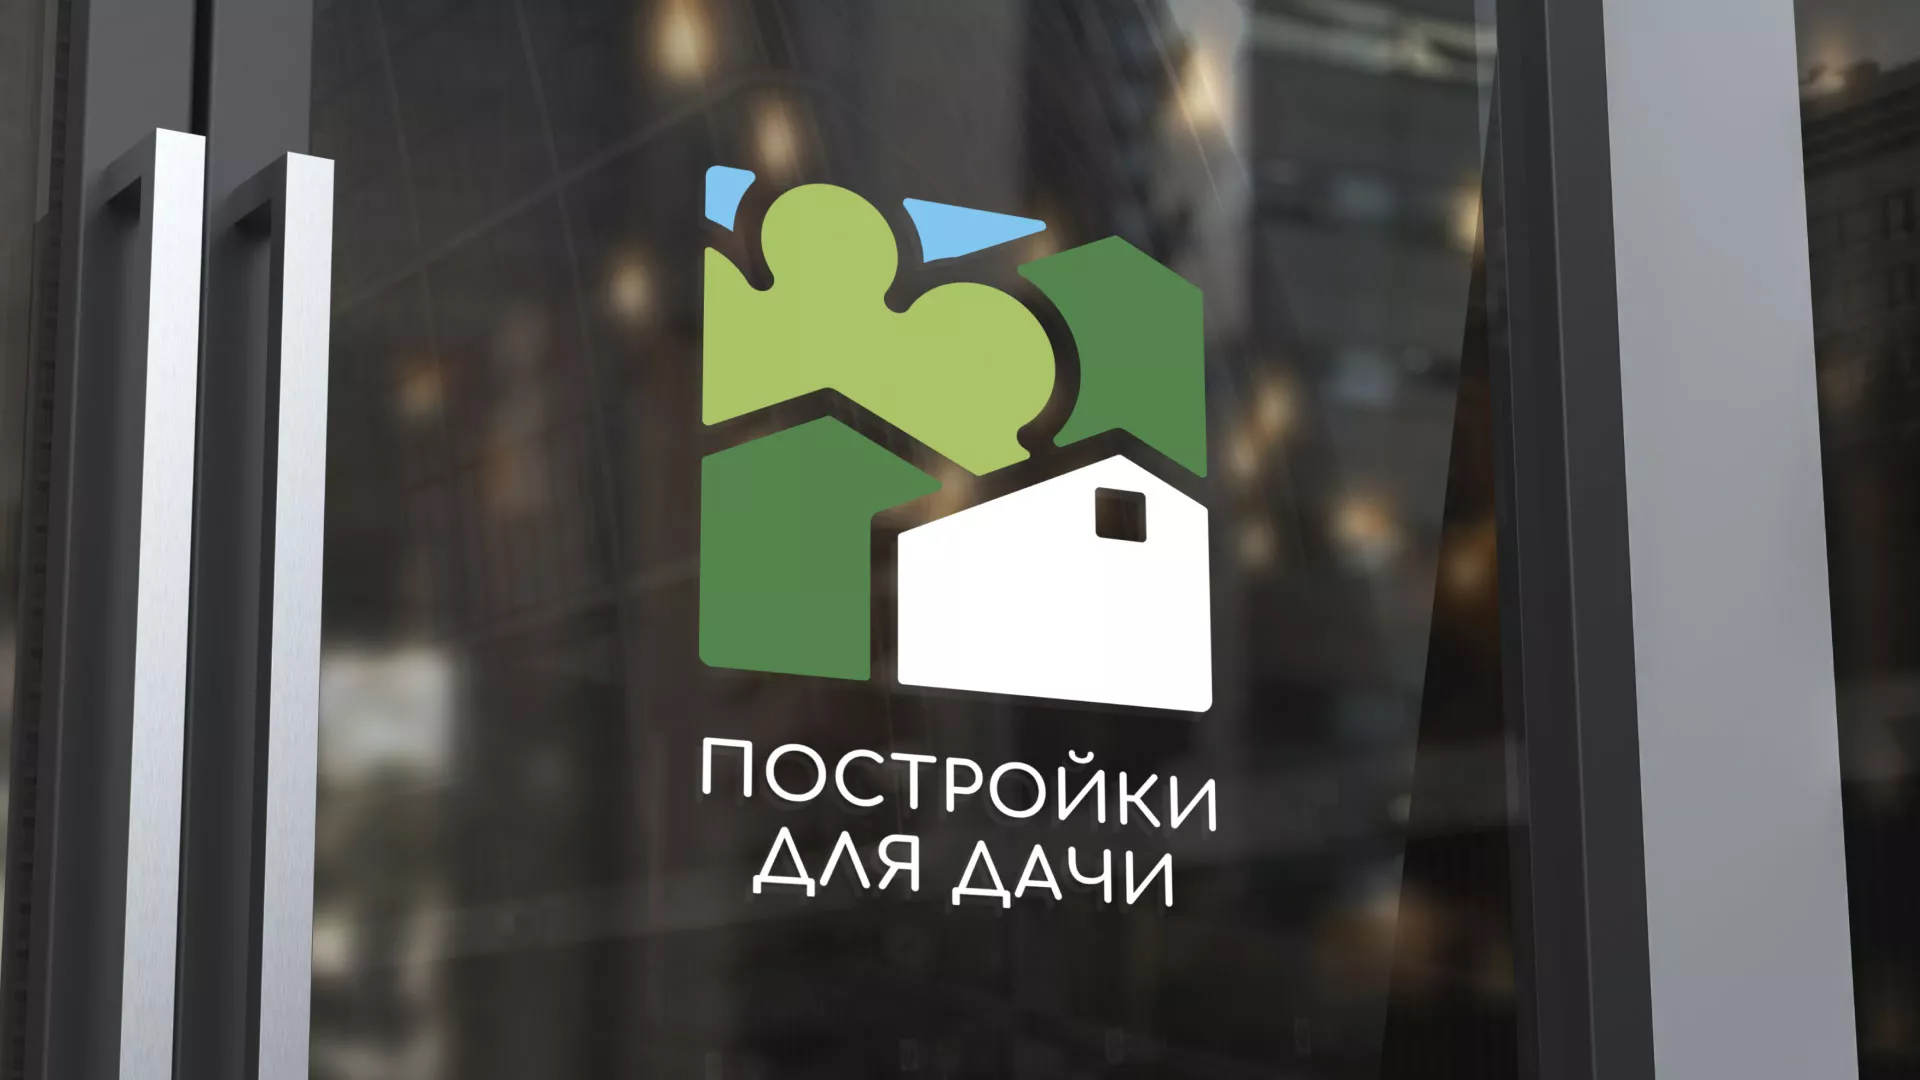 Разработка логотипа в Гусь-Хрустальном для компании «Постройки для дачи»